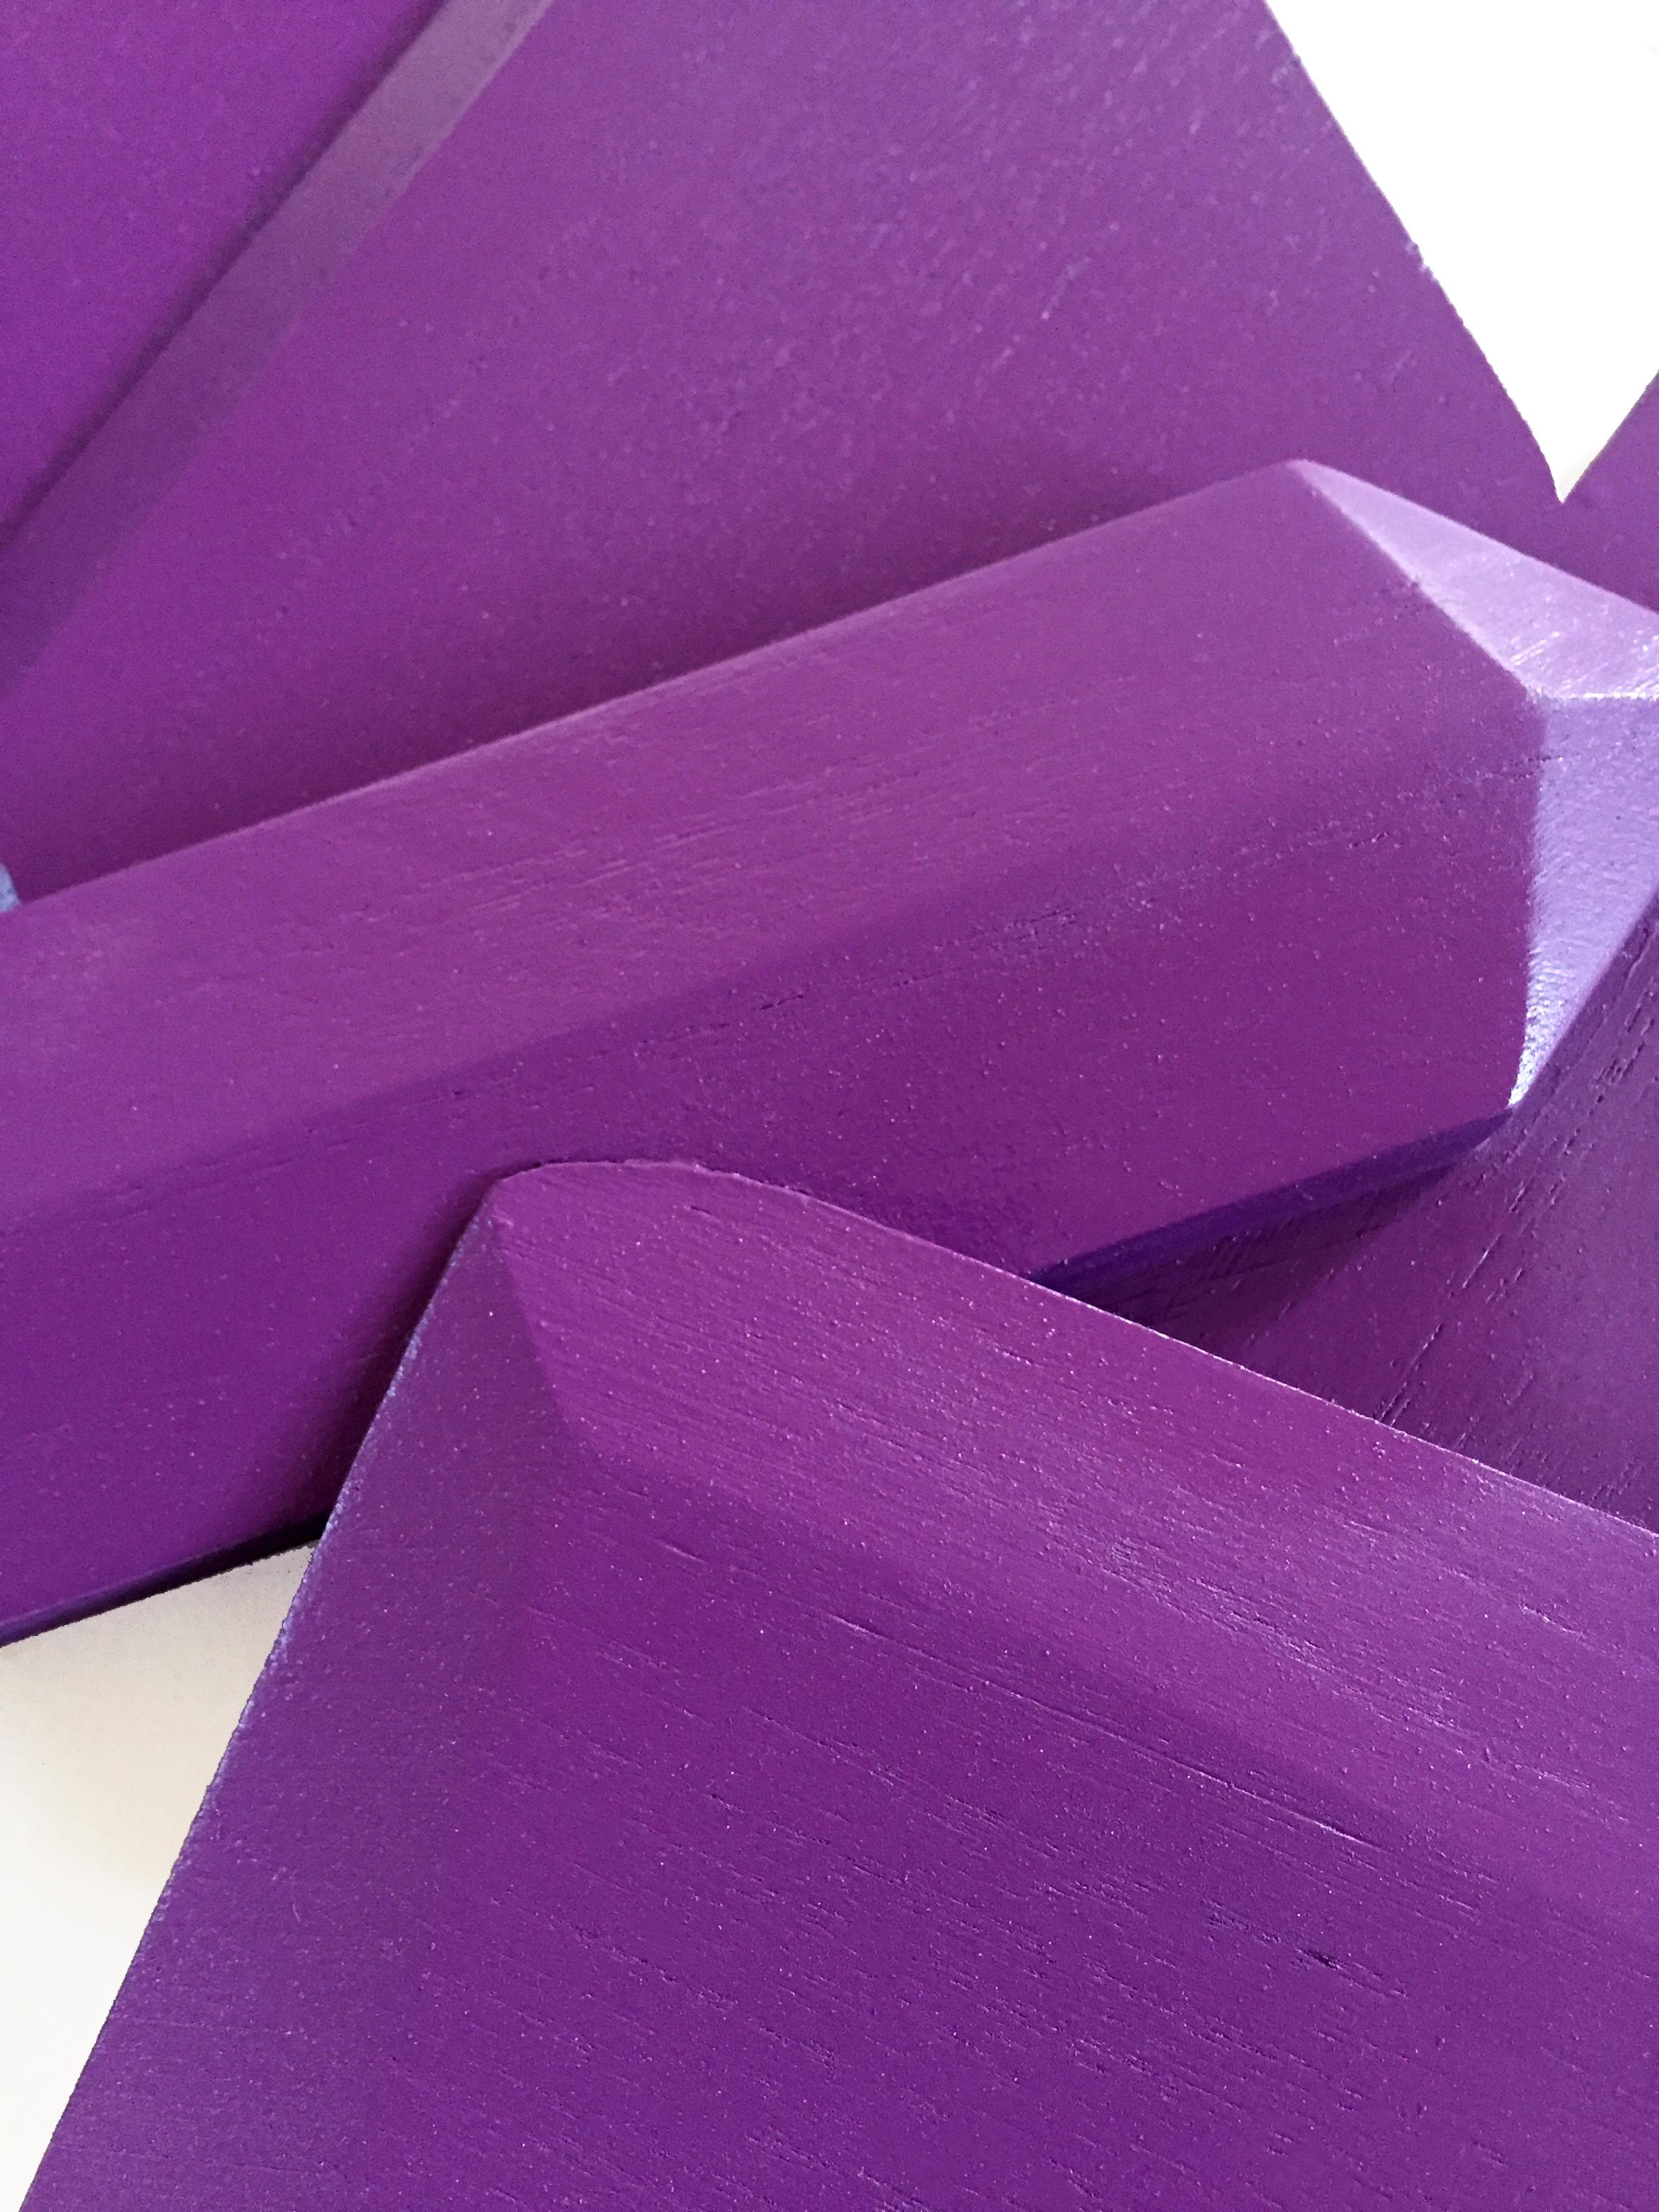 Ultra Violet Crystal (Holz, zeitgenössisches Design, geometrisch, violett, Skulptur) (Abstrakt), Sculpture, von Chloe Hedden